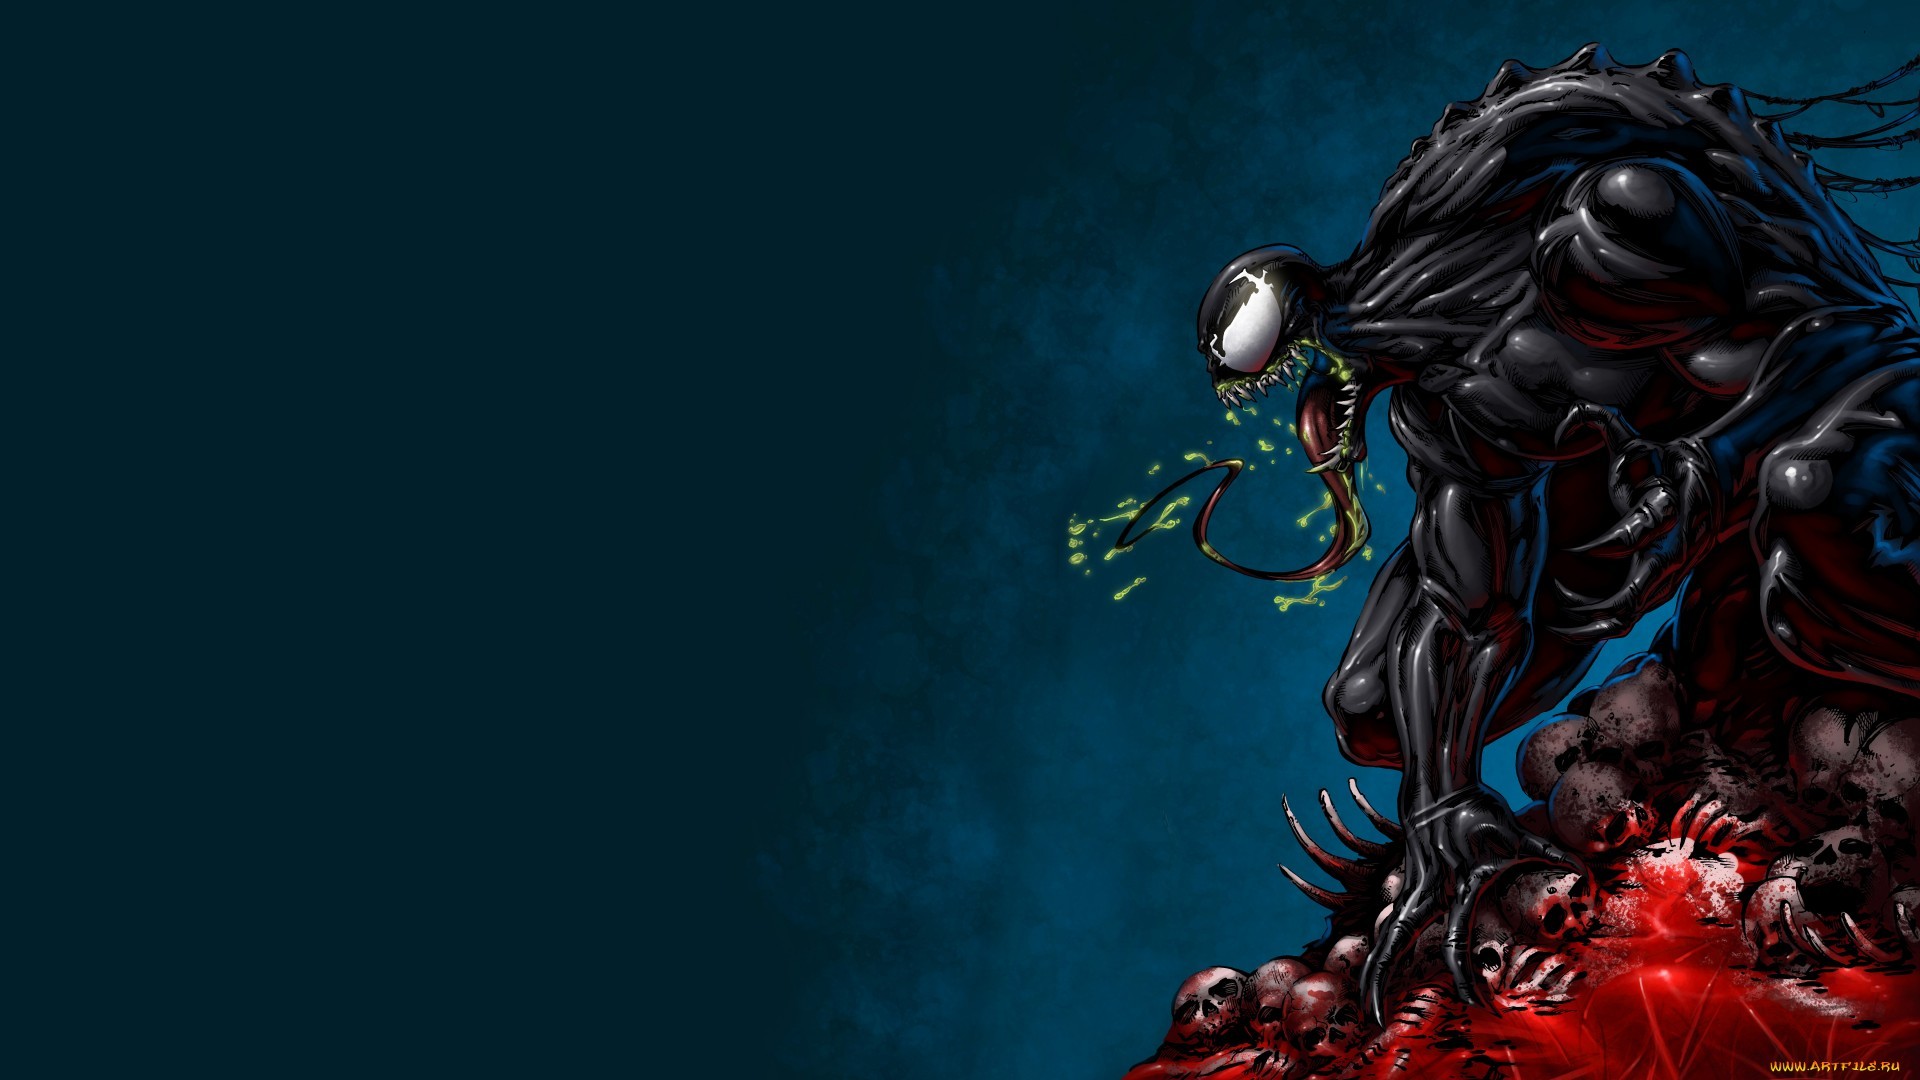 Venom Wallpaper Full HD Free Download